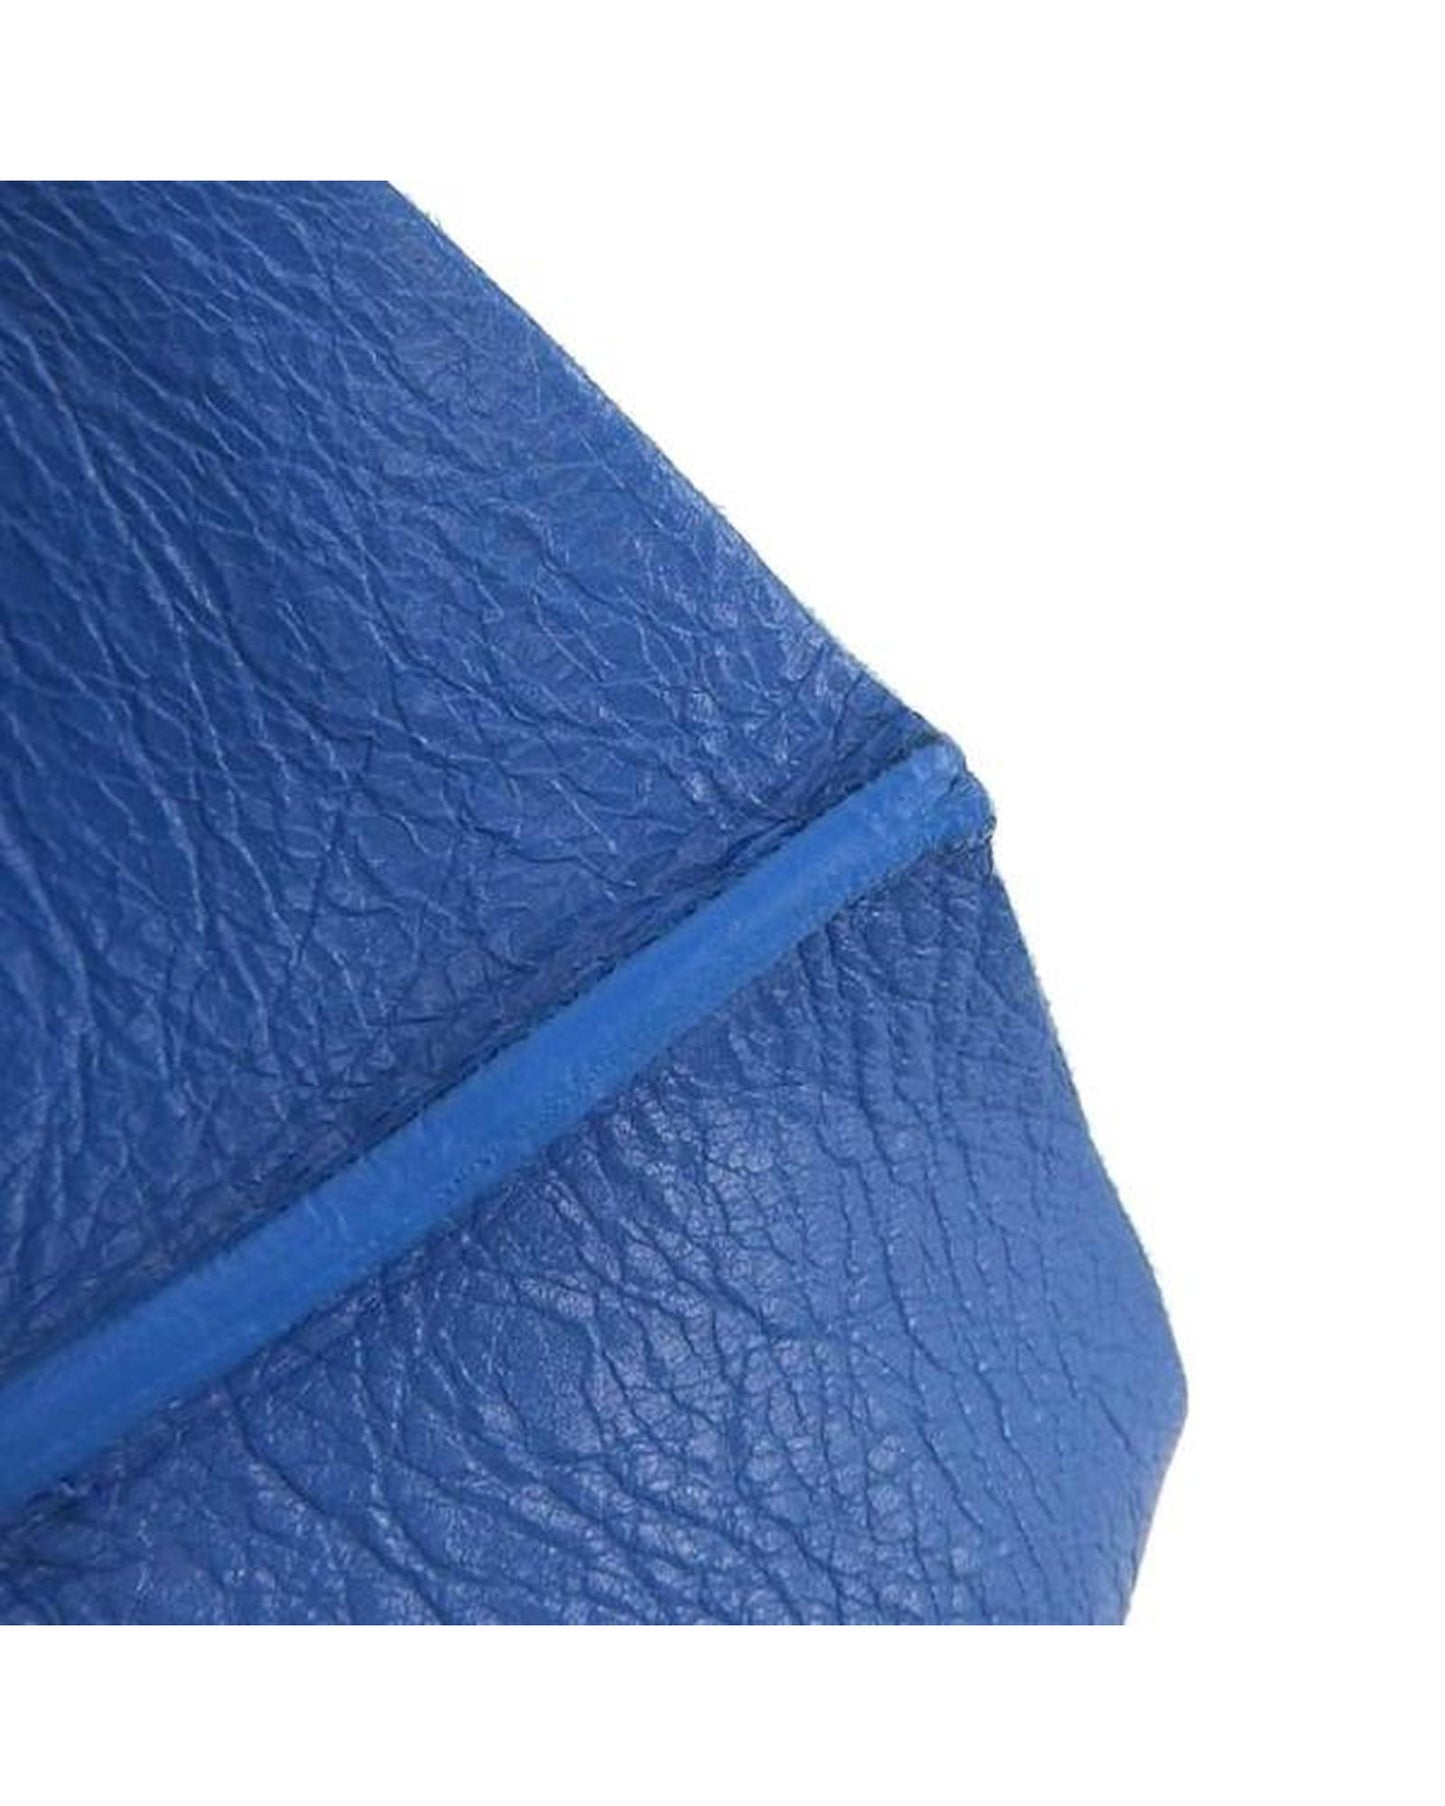 Balenciaga Women's Supermarket Shopper Handbag in Blue in Blue